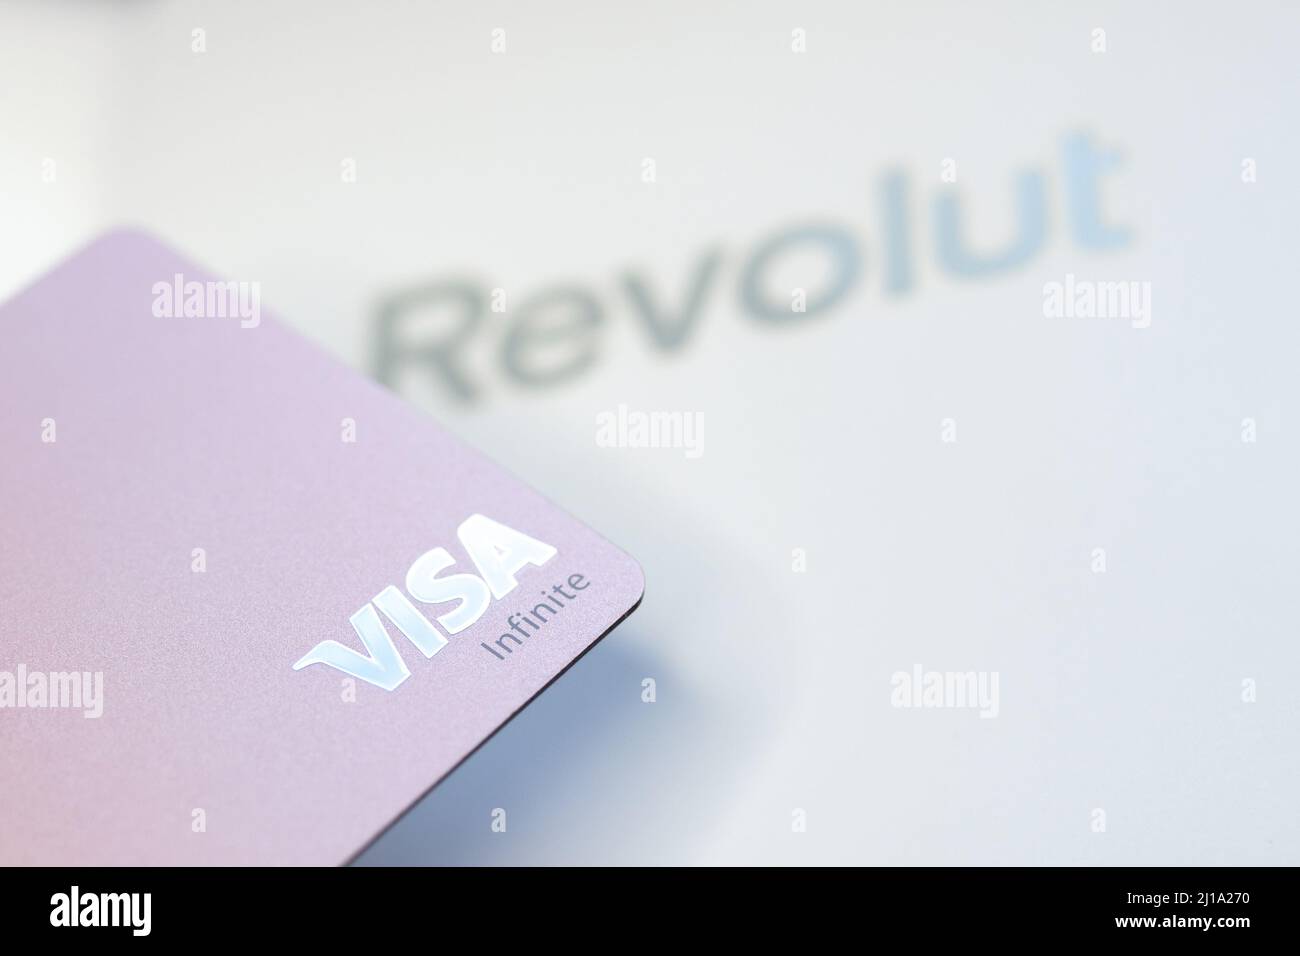 Fotografia editoriale illustrativa della carta Infinite Revolut Visa Foto Stock